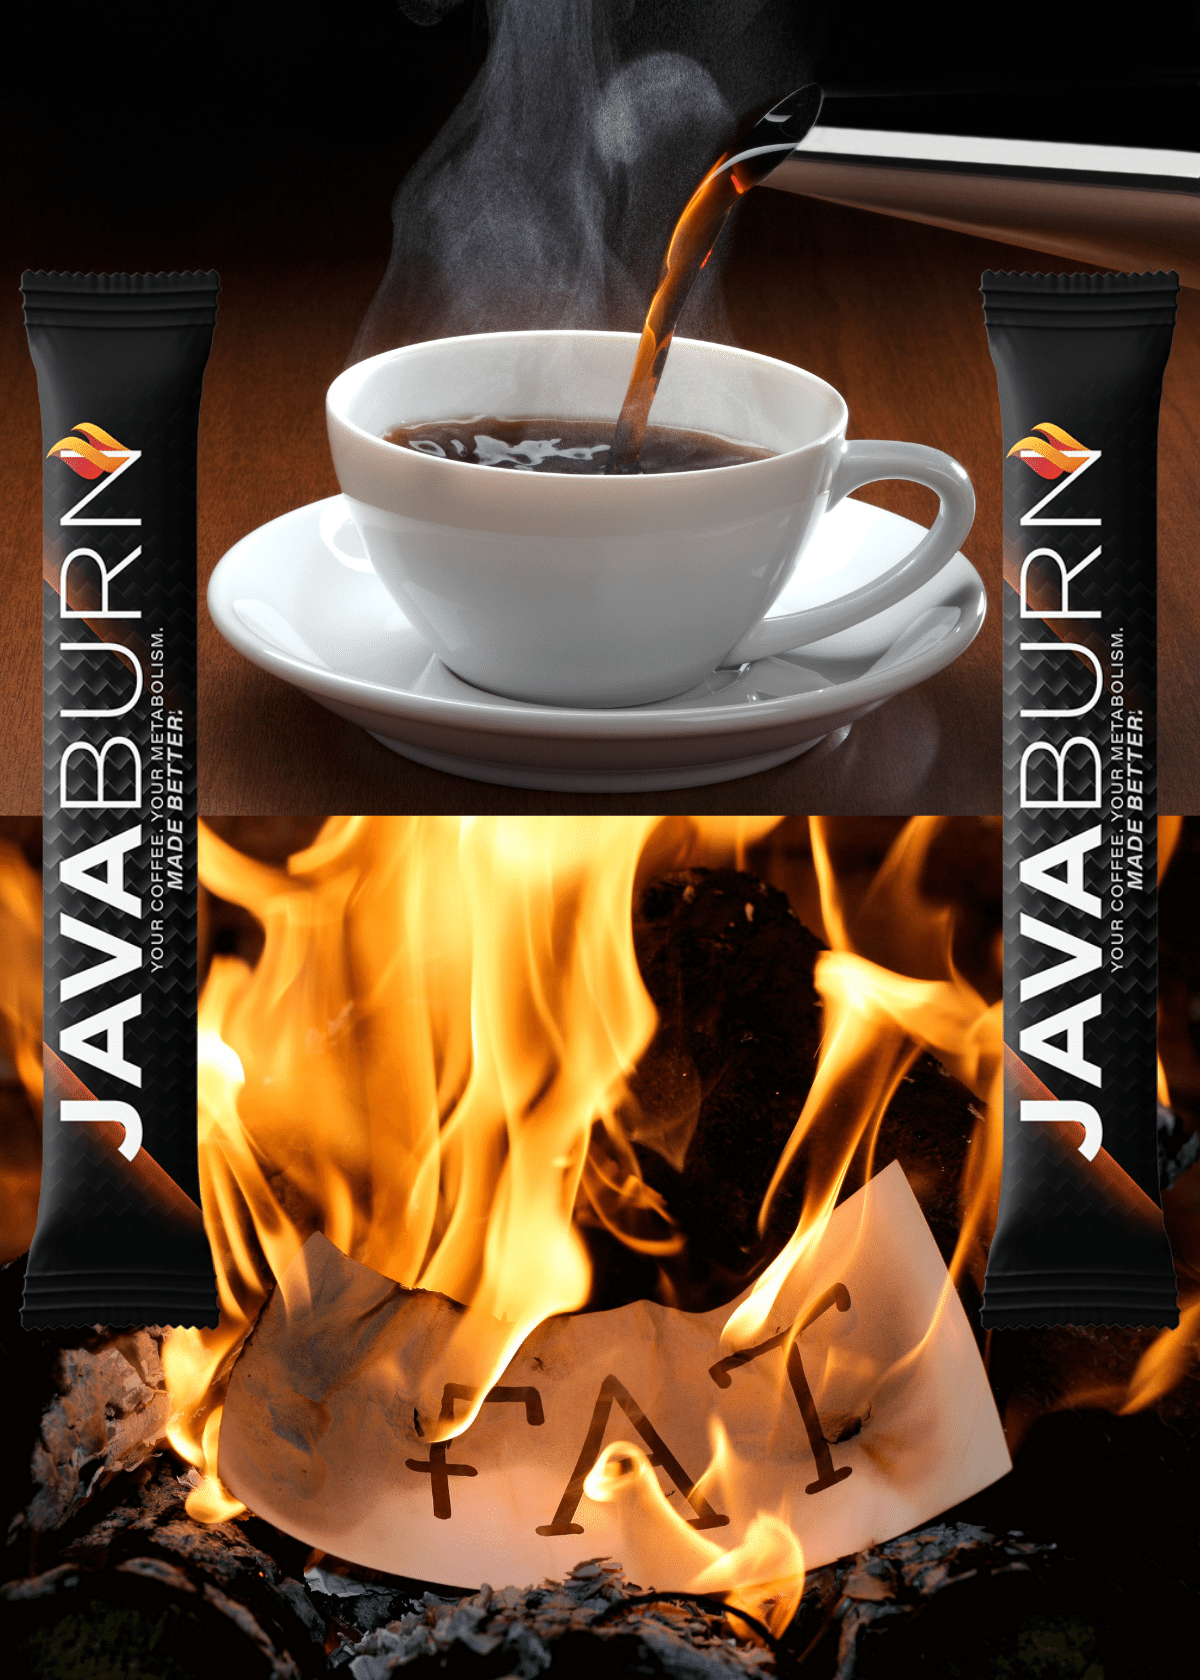 JavaBurn Fat Burning Coffee